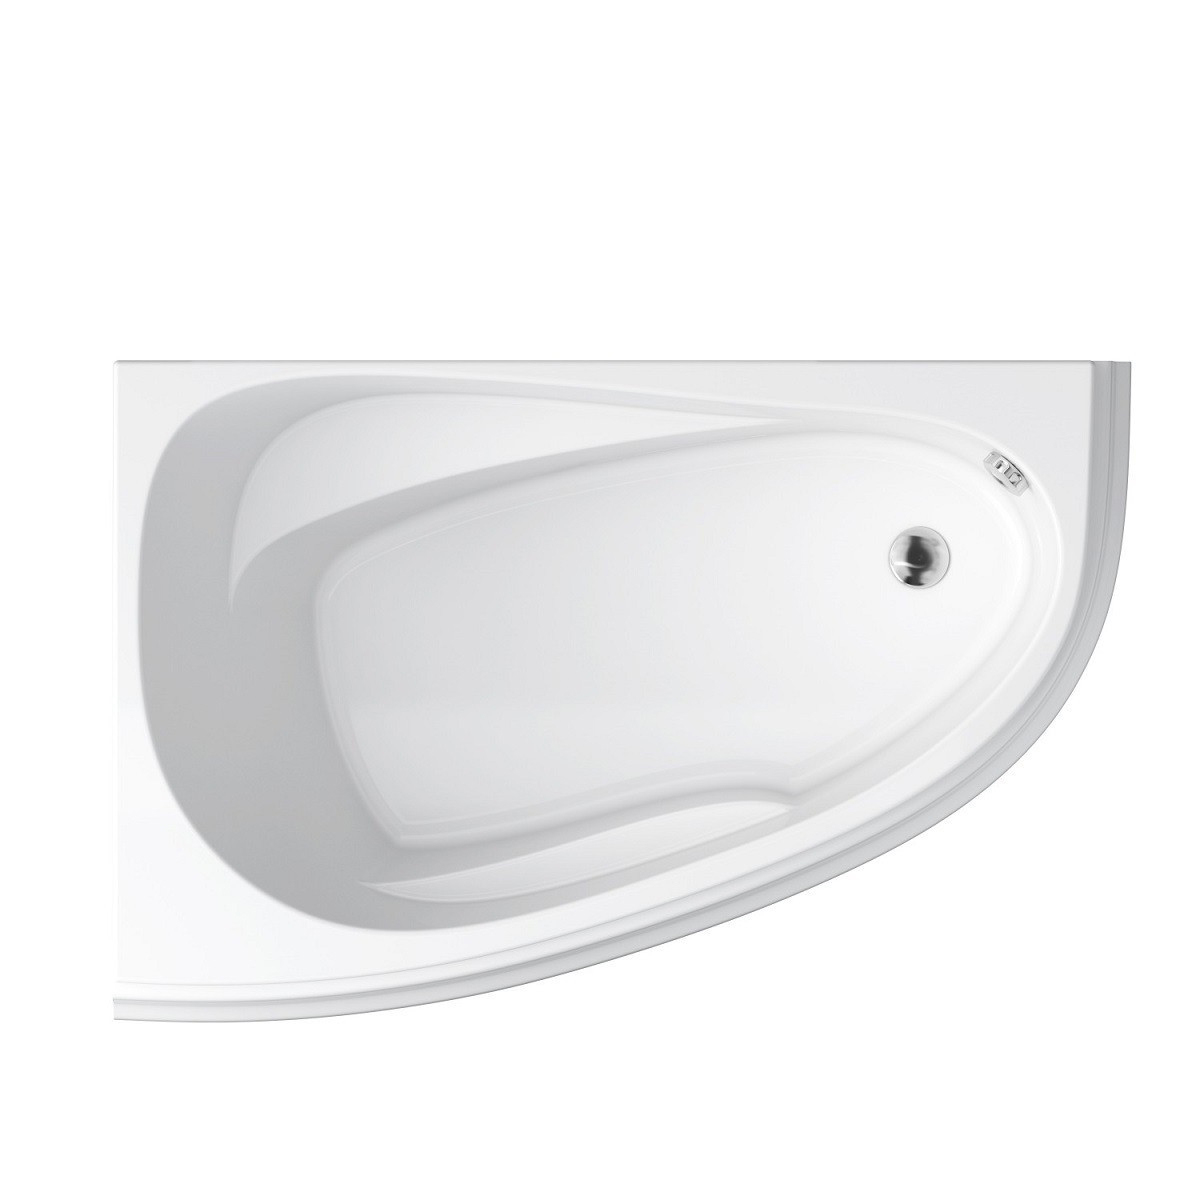 Характеристики ванна со сливом справа Cersanit Joanna New 150*95 левая